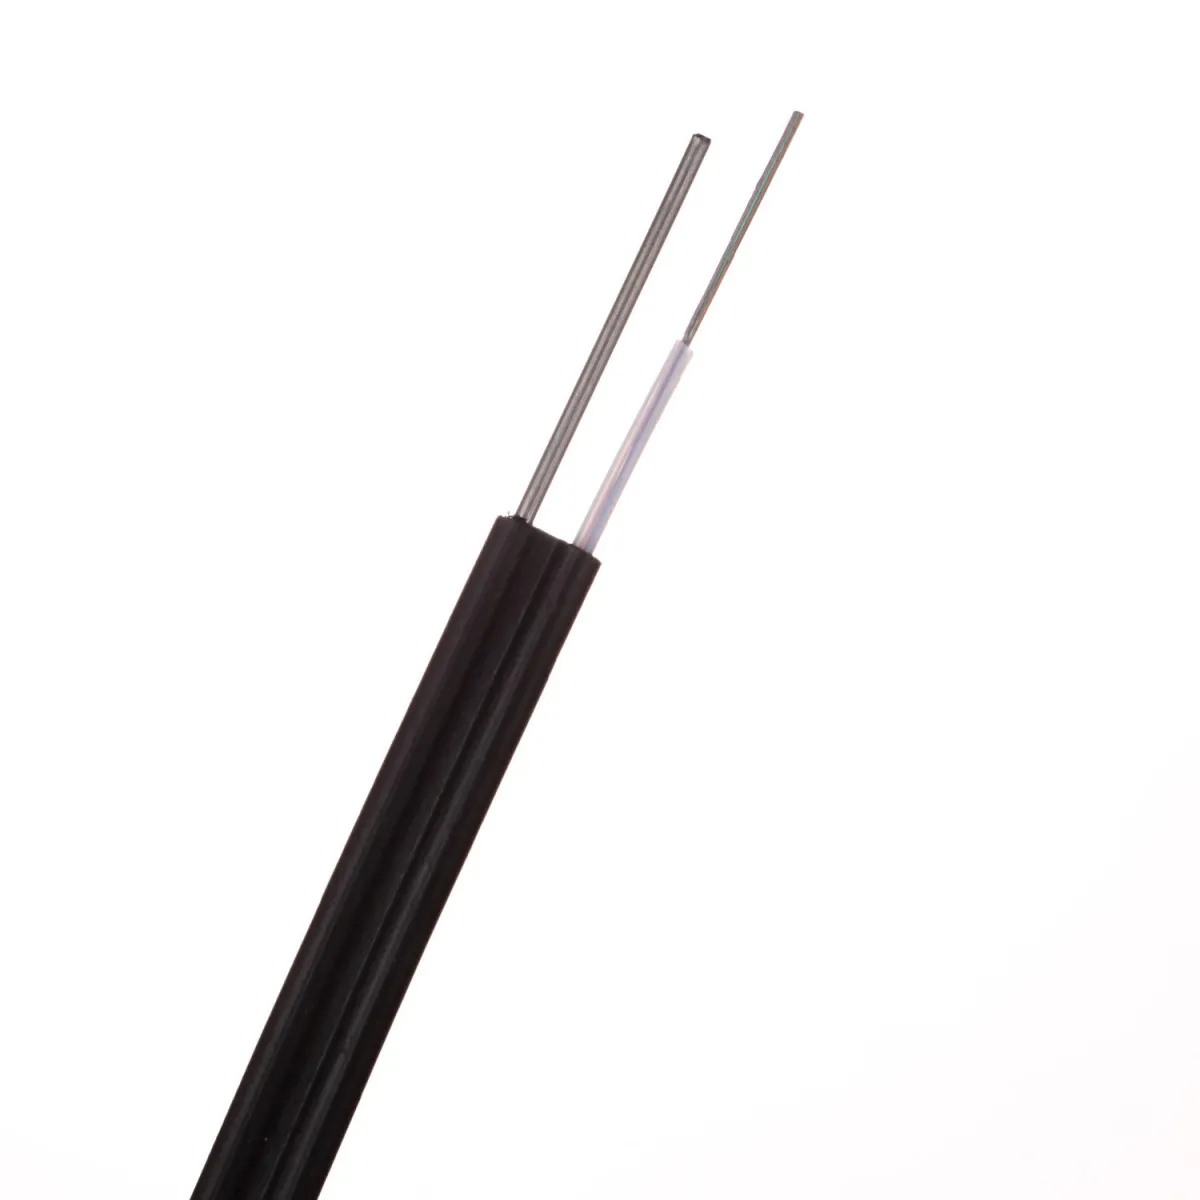 Оптический кабель подвесной с вынесенной проволокой ОКП-ПР 1,2,4,8,12,16 волокон#1